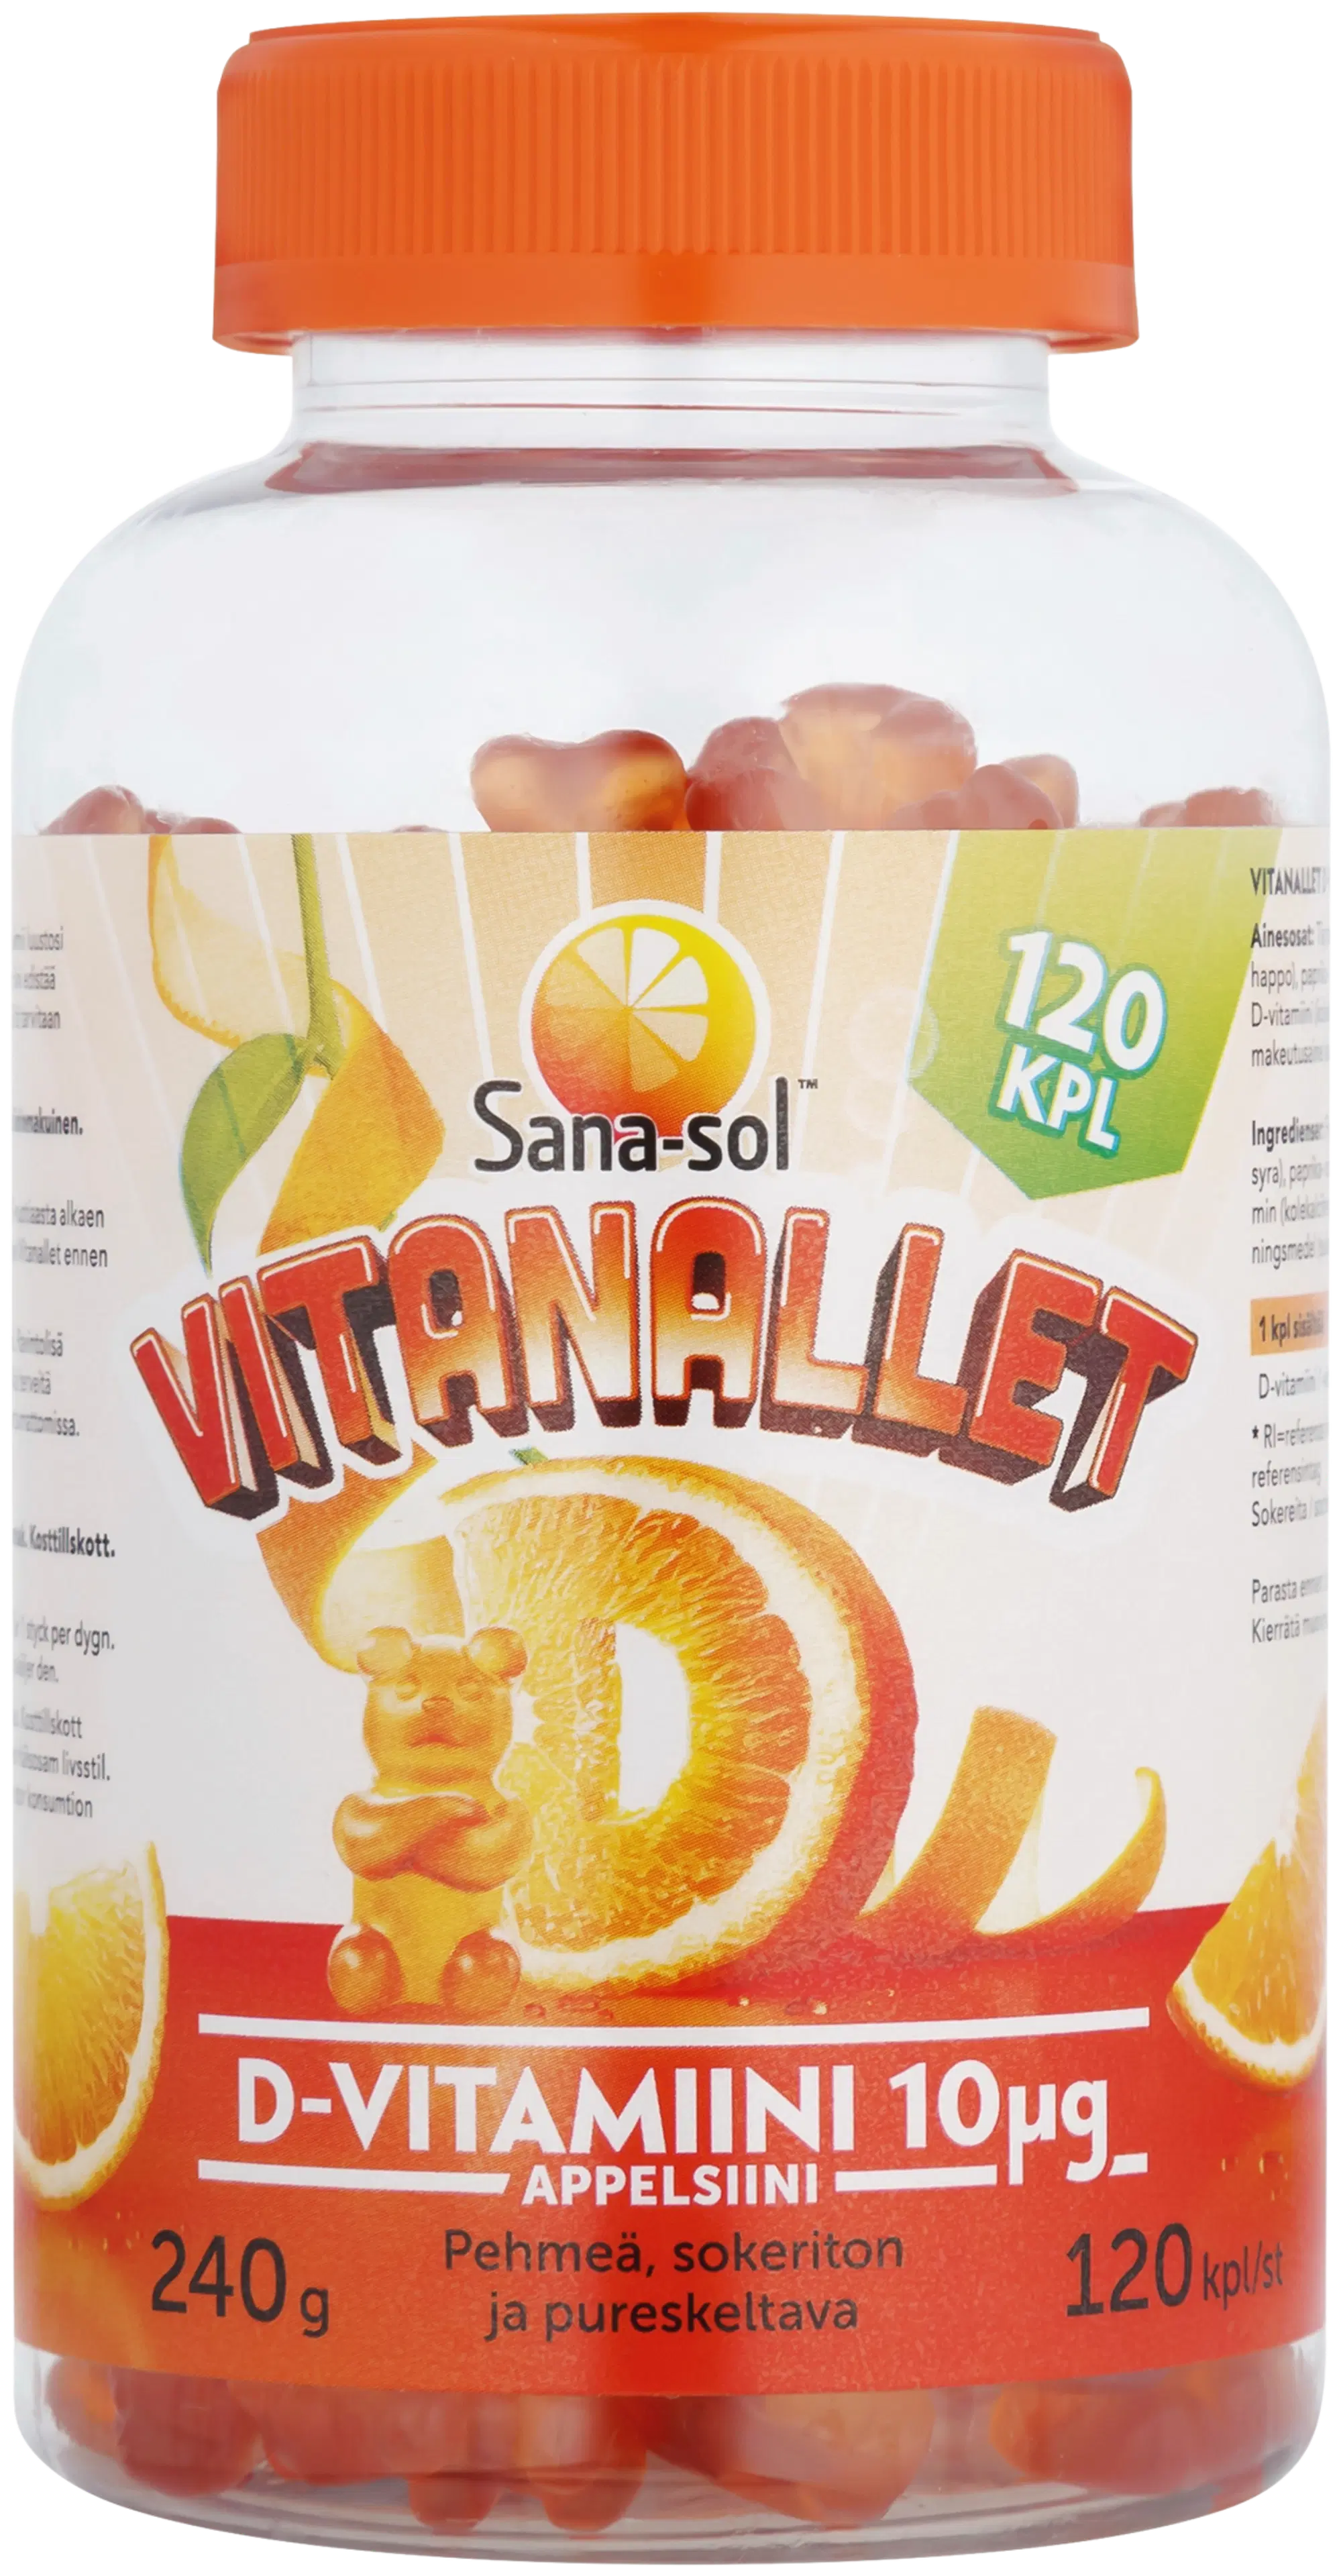 Sana-sol Vitanallet D-vitamiini 10µg appelsiini ravintolisä 120kpl/240g